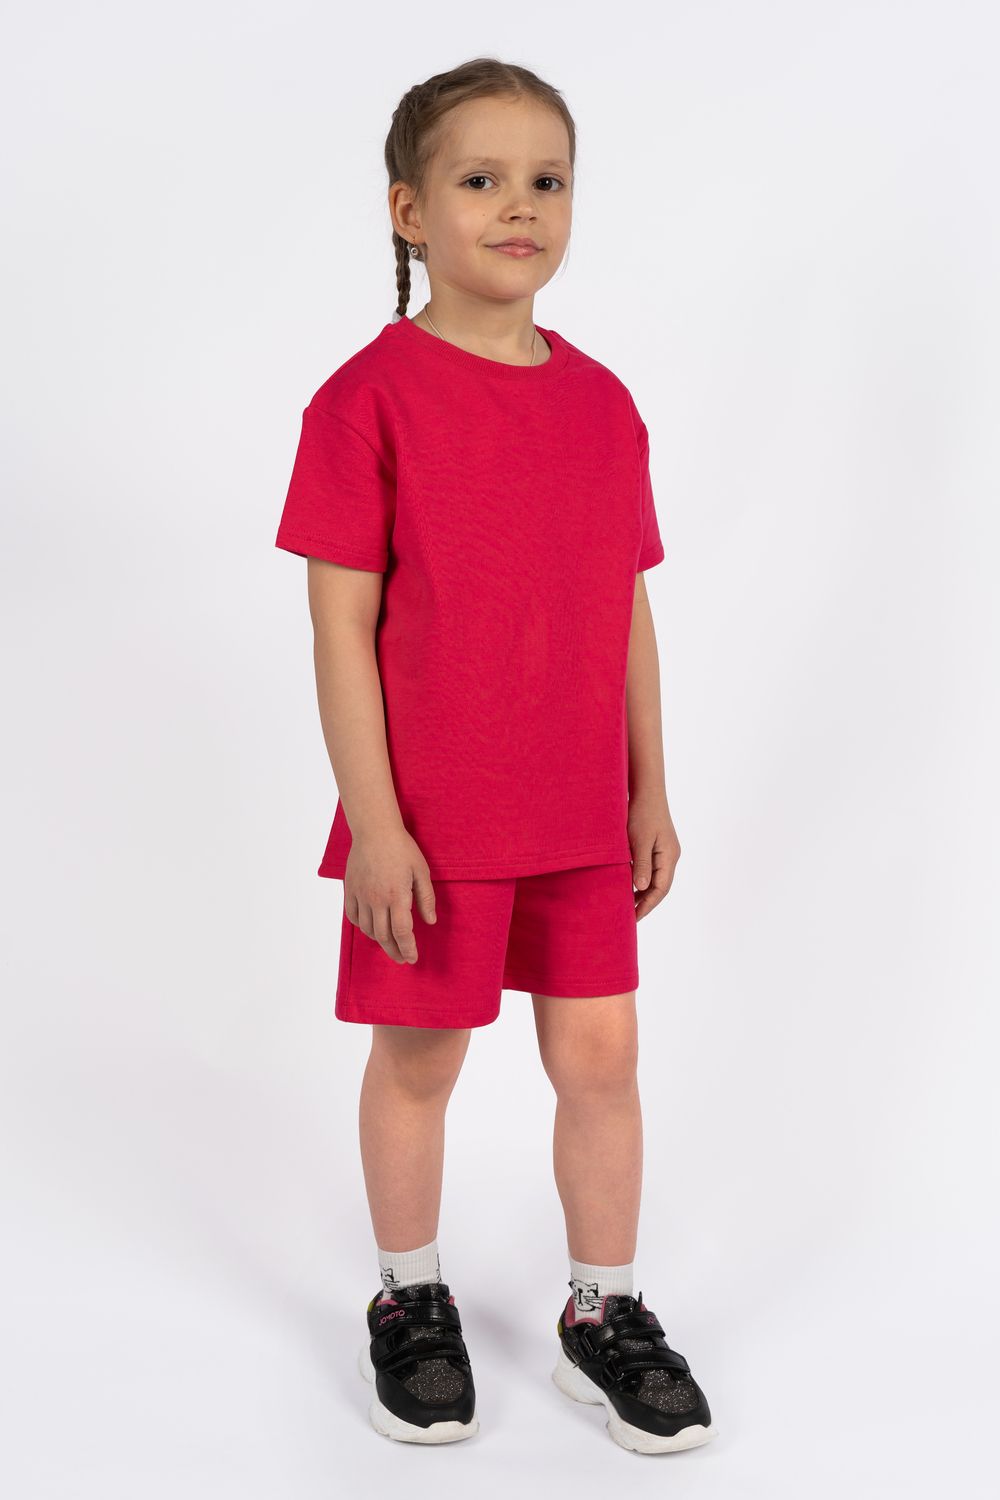 Комплект детский 42100 (футболка + шорты) - бубль-гум